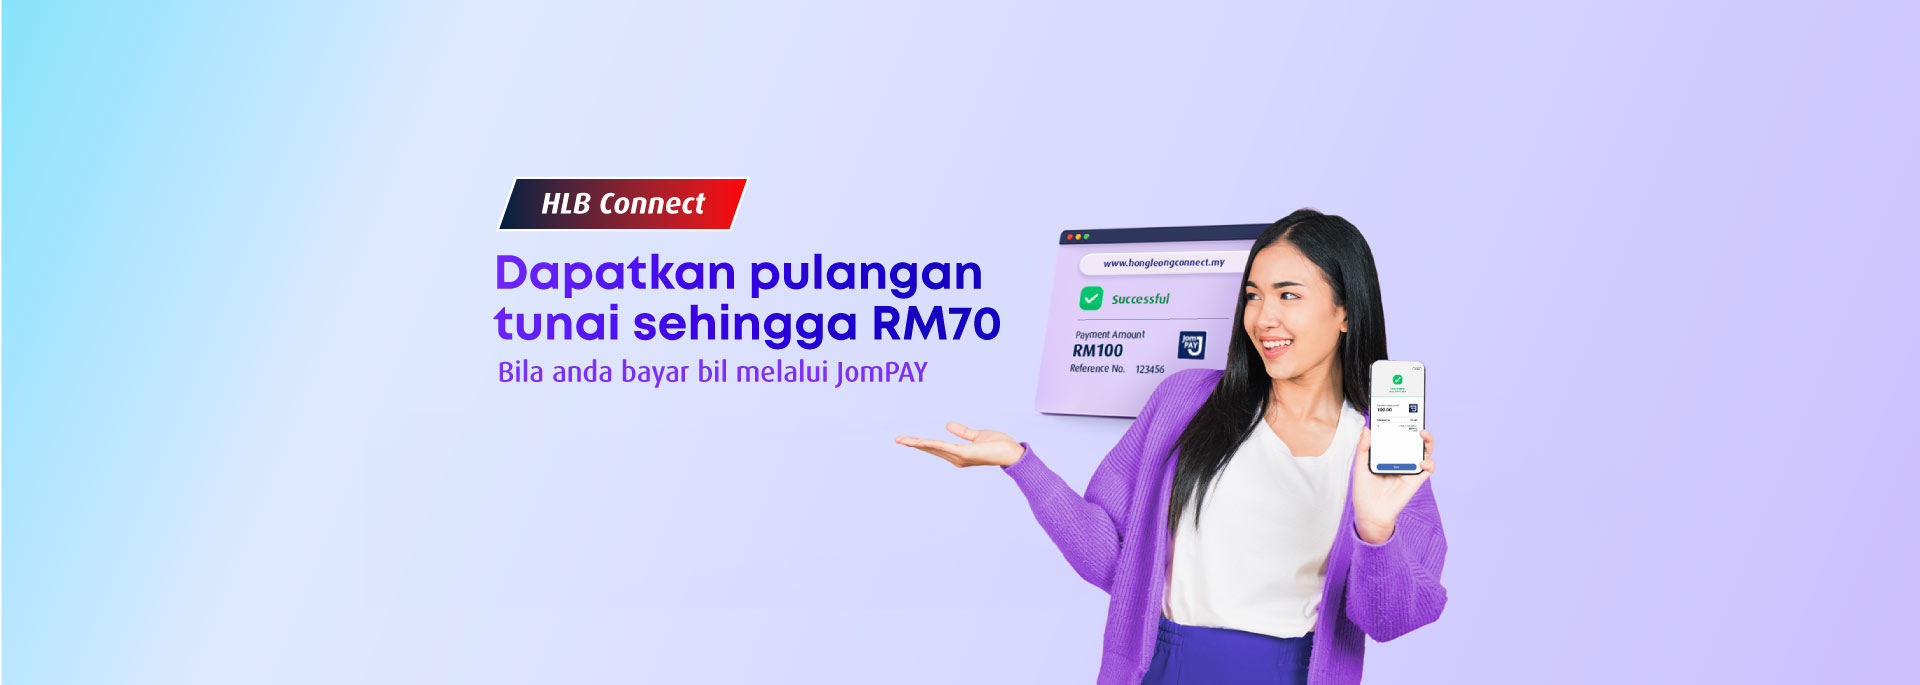 Dapatkan pulangan tunai sehingga RM70